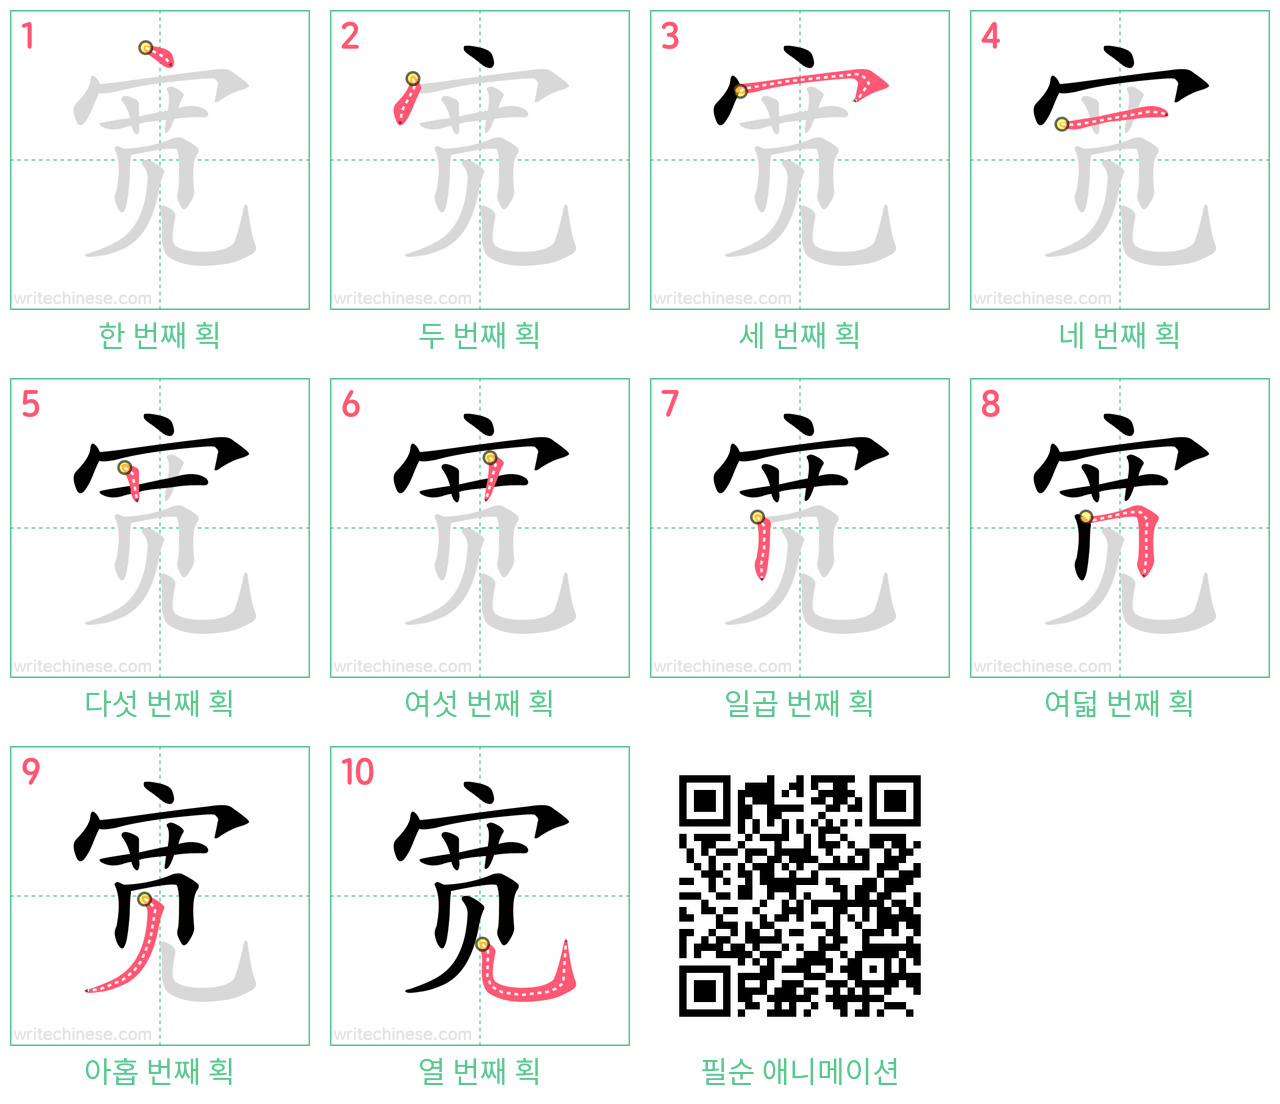 宽 step-by-step stroke order diagrams